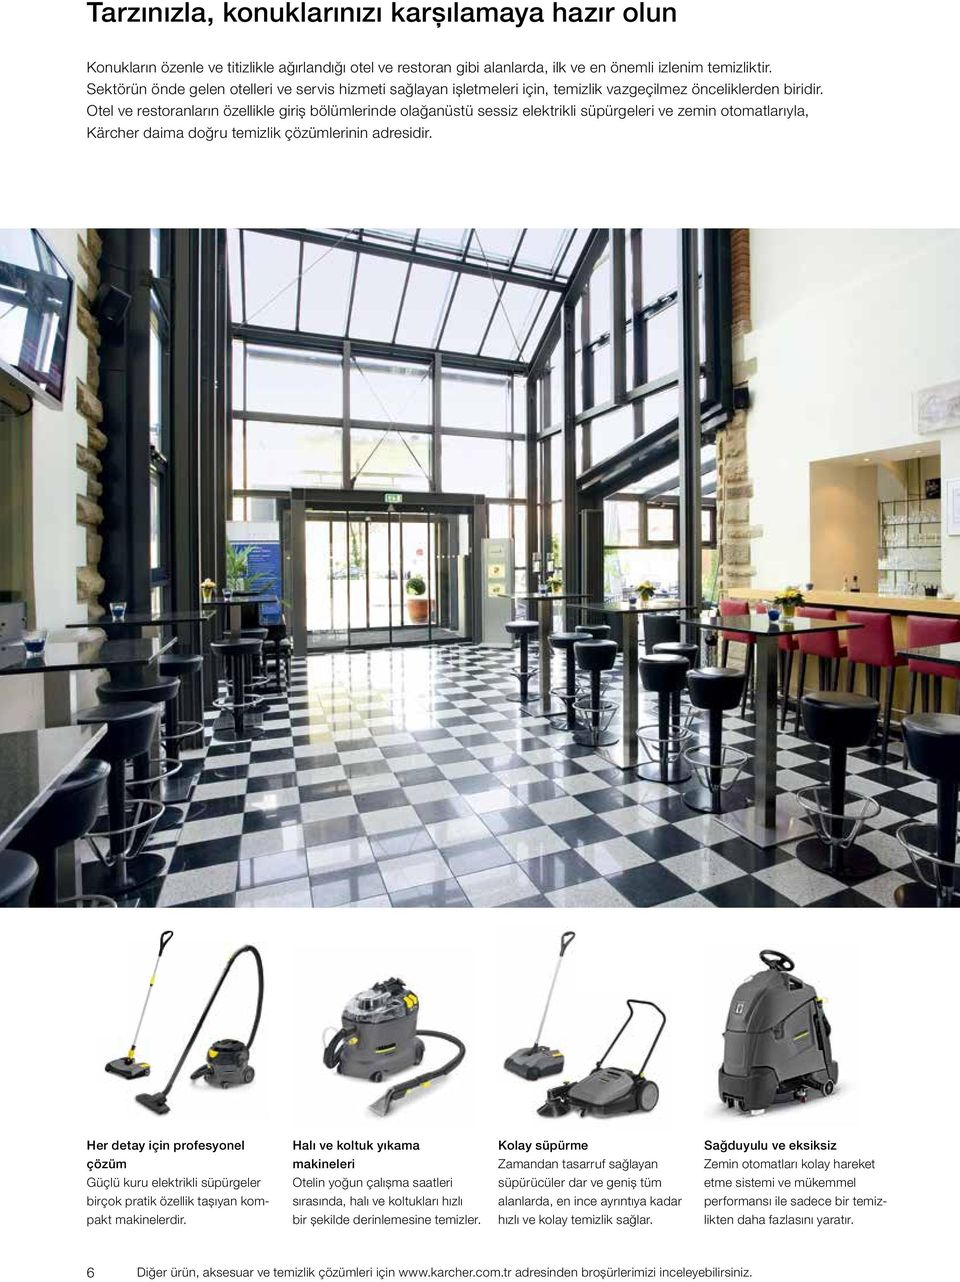 Otel ve restoranların özellikle giriş bölümlerinde olağanüstü sessiz elektrikli süpürgeleri ve zemin otomatlarıyla, Kärcher daima doğru temizlik çözümlerinin adresidir.